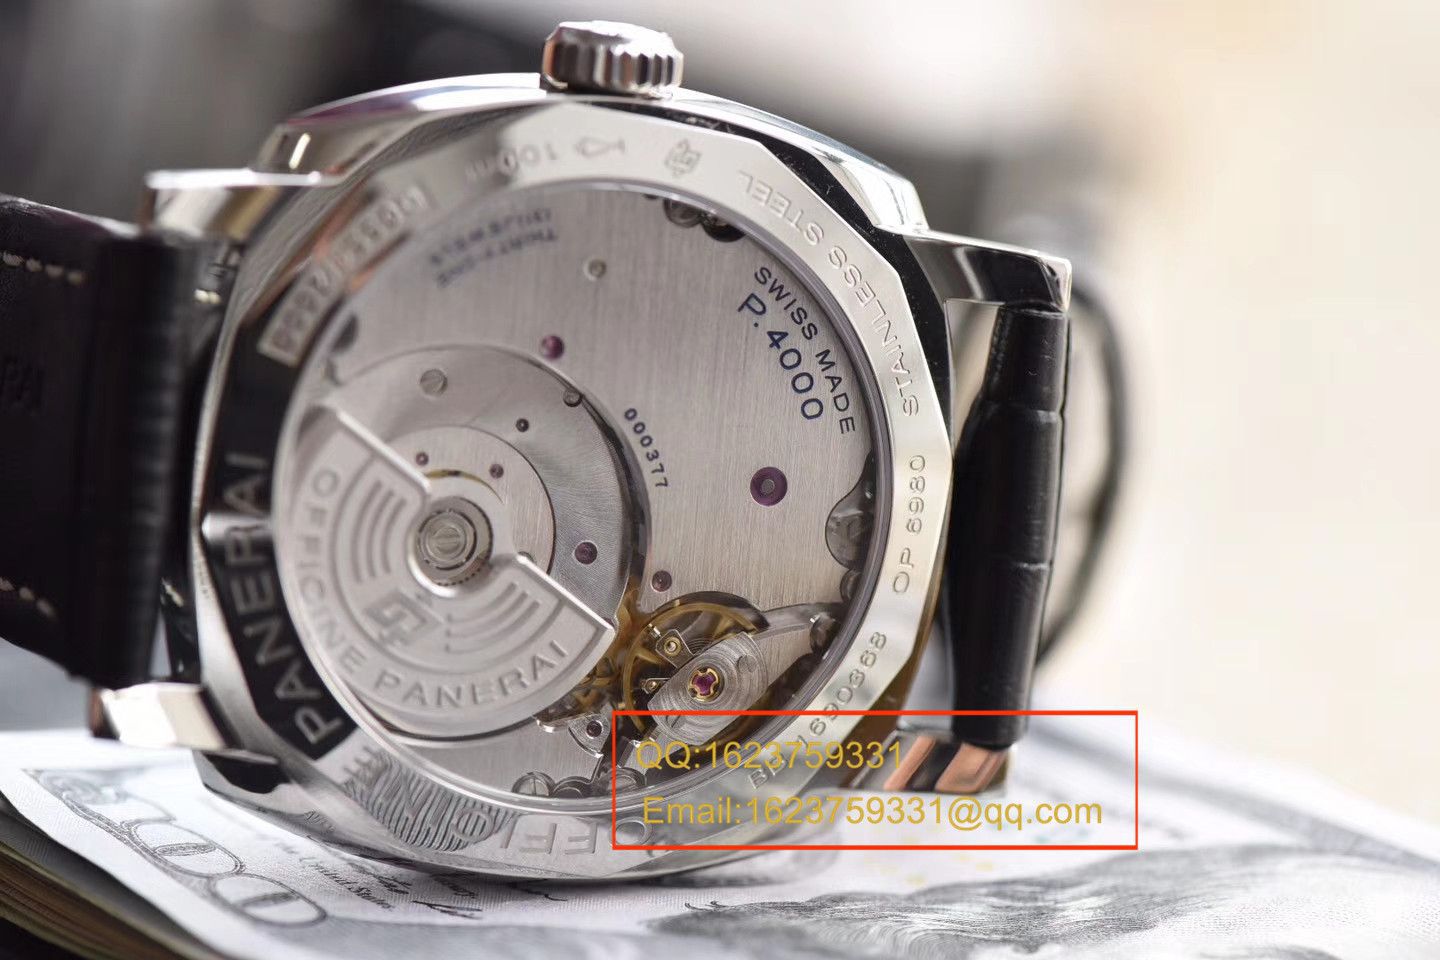 视频评测珍珠陀沛纳海RADIOMIR系列PAM00572腕表【SF厂一比一复刻】 / SFPAM00572MM